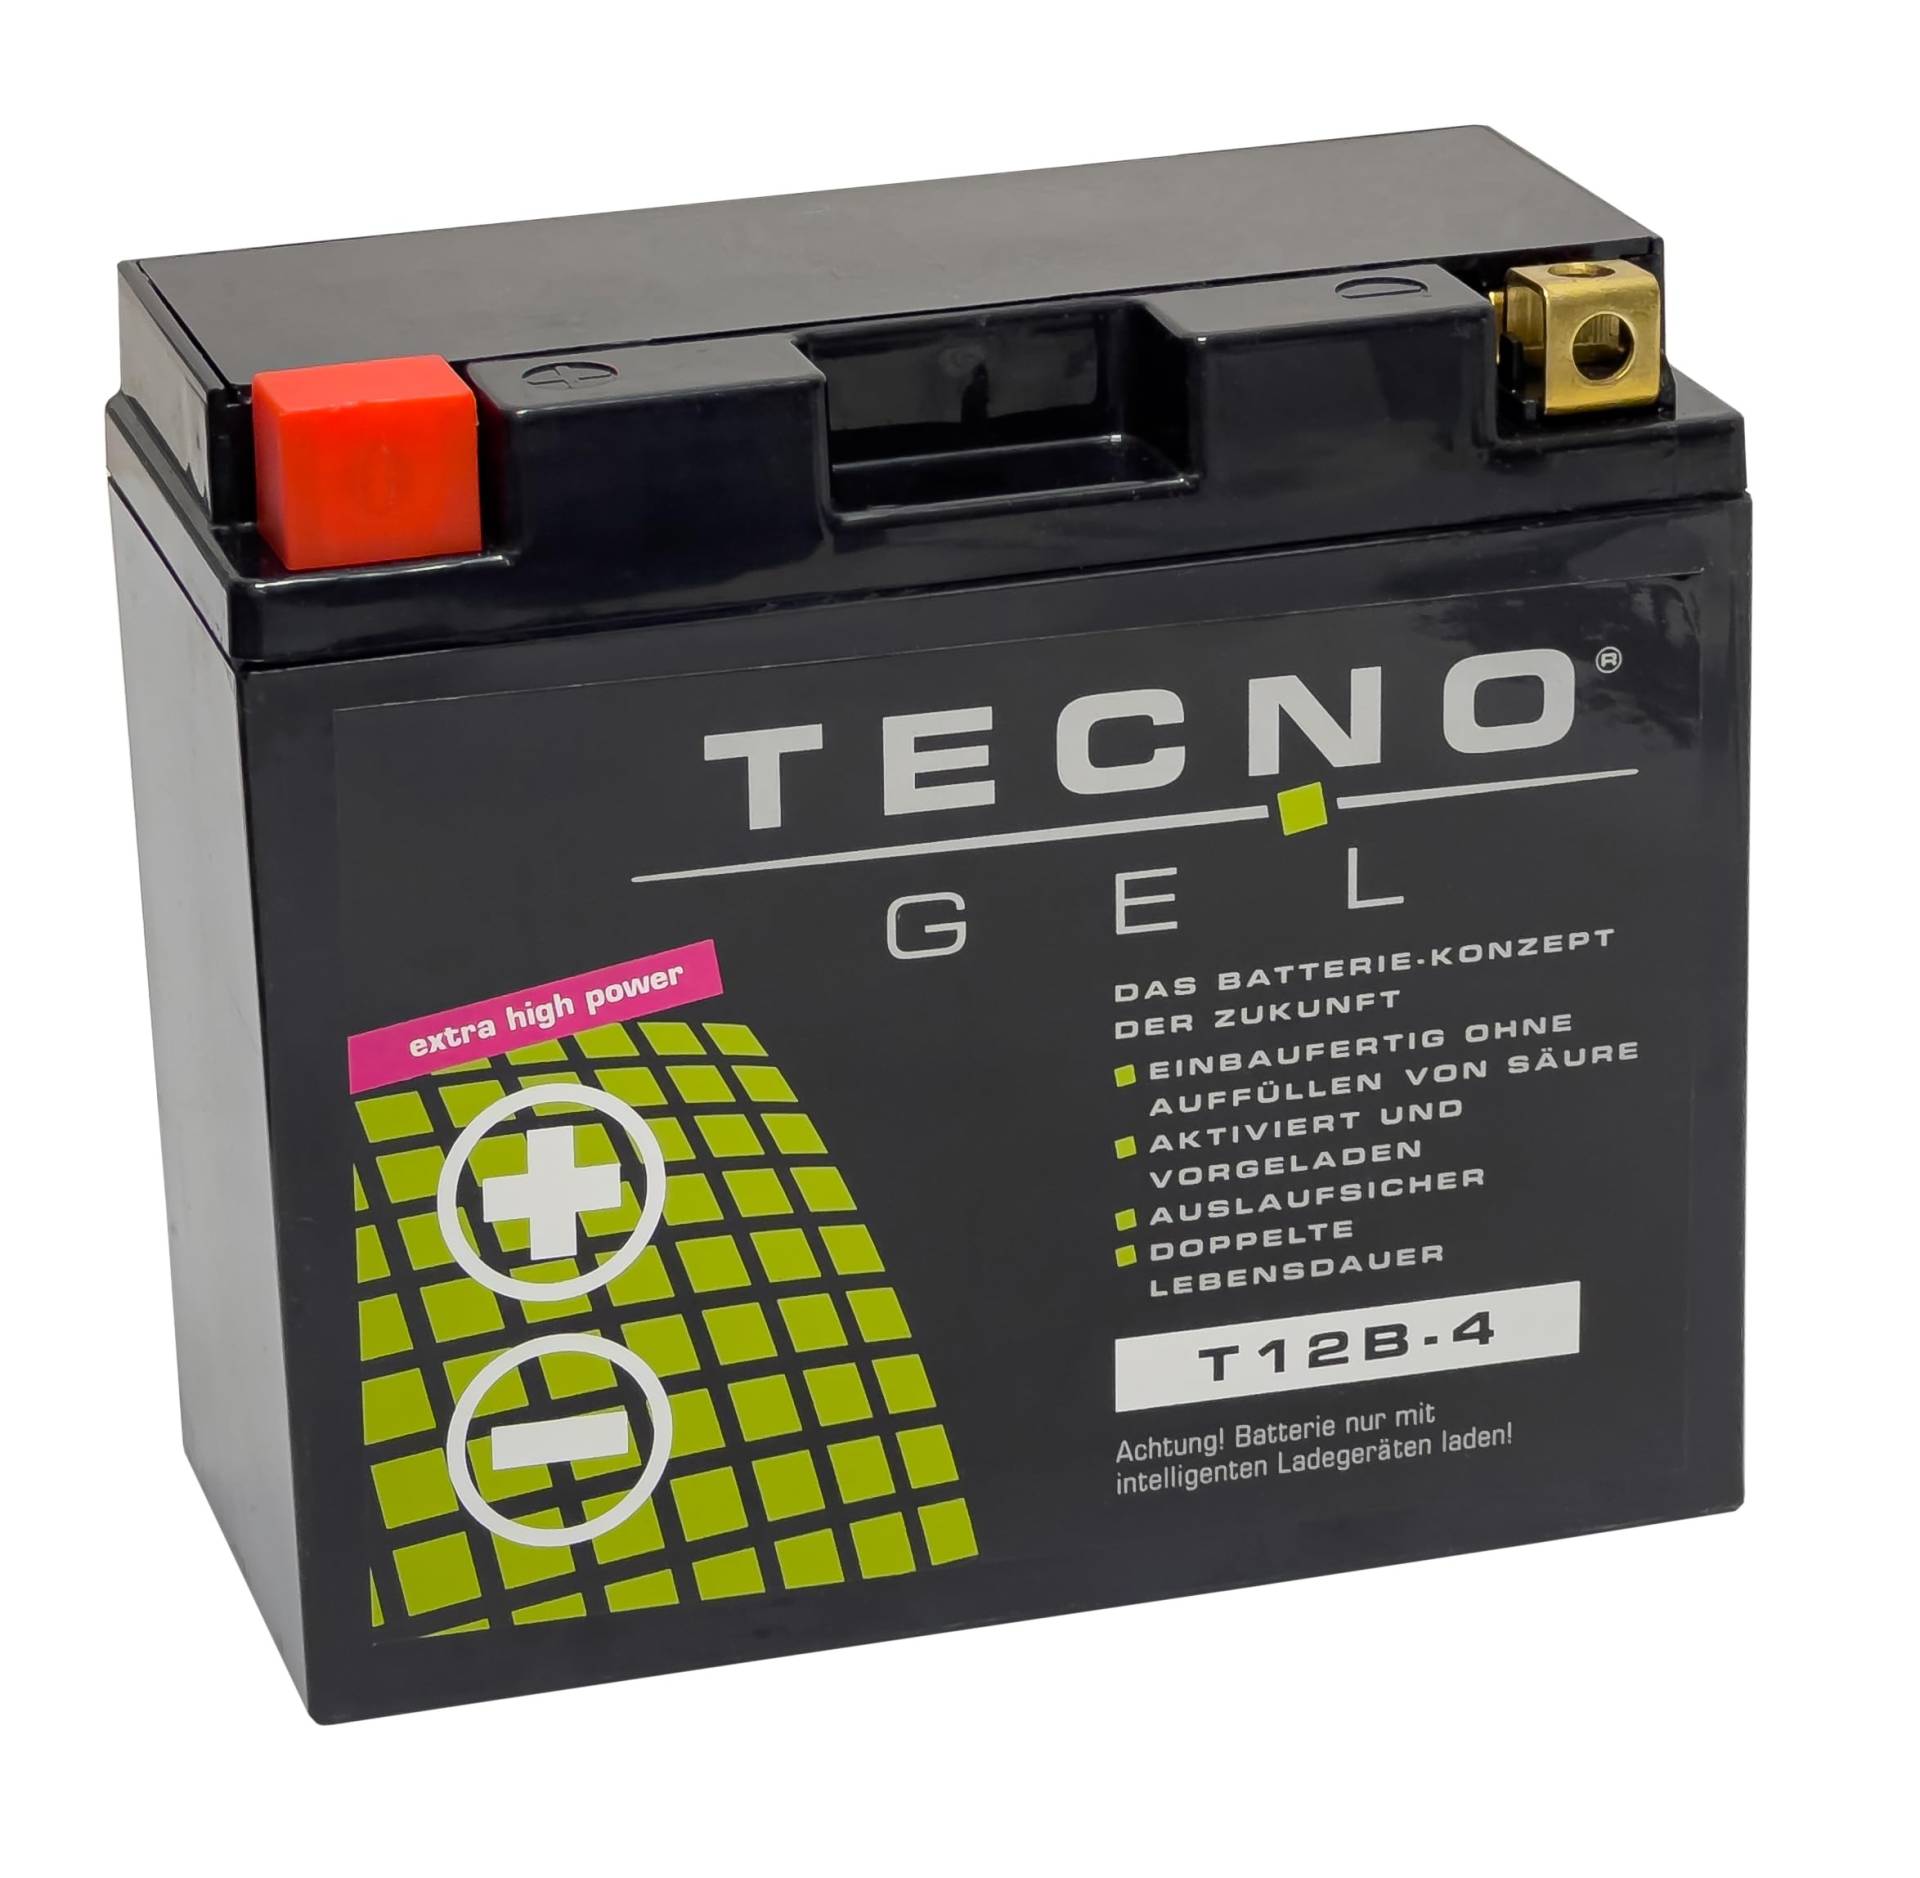 TECNO-GEL QUALITÄTS BATTERIE für YT12B-4 = YT12B-BS (DIN 51290) für Yamaha TDM 850/900 u.a. von Wirth-Federn